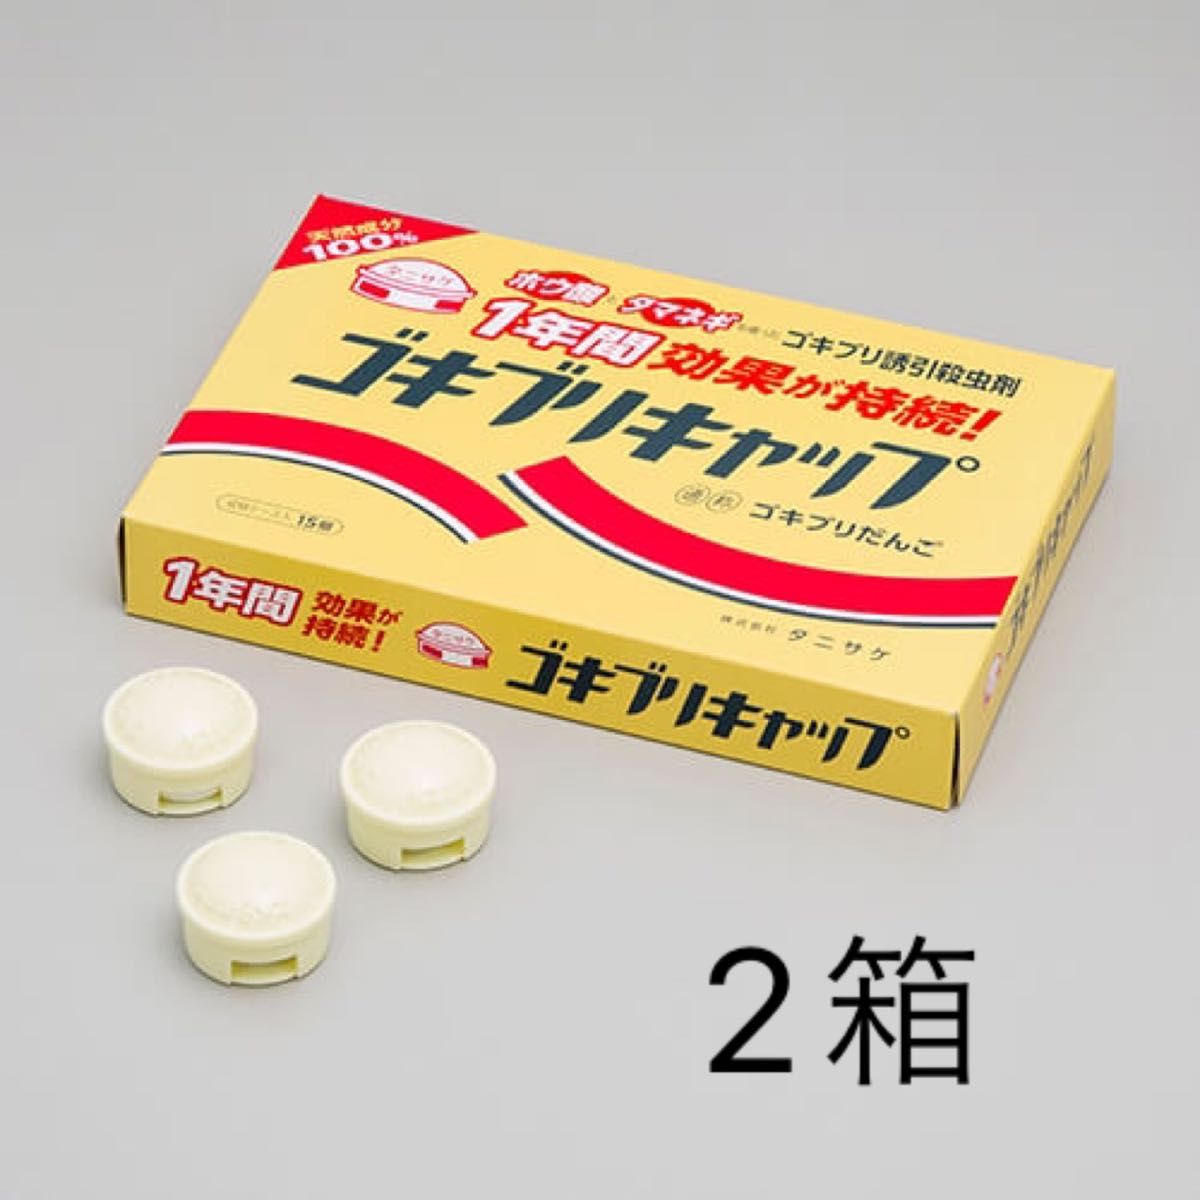 【残りわずか】タニサケ ゴキブリキャップ 15個×2箱